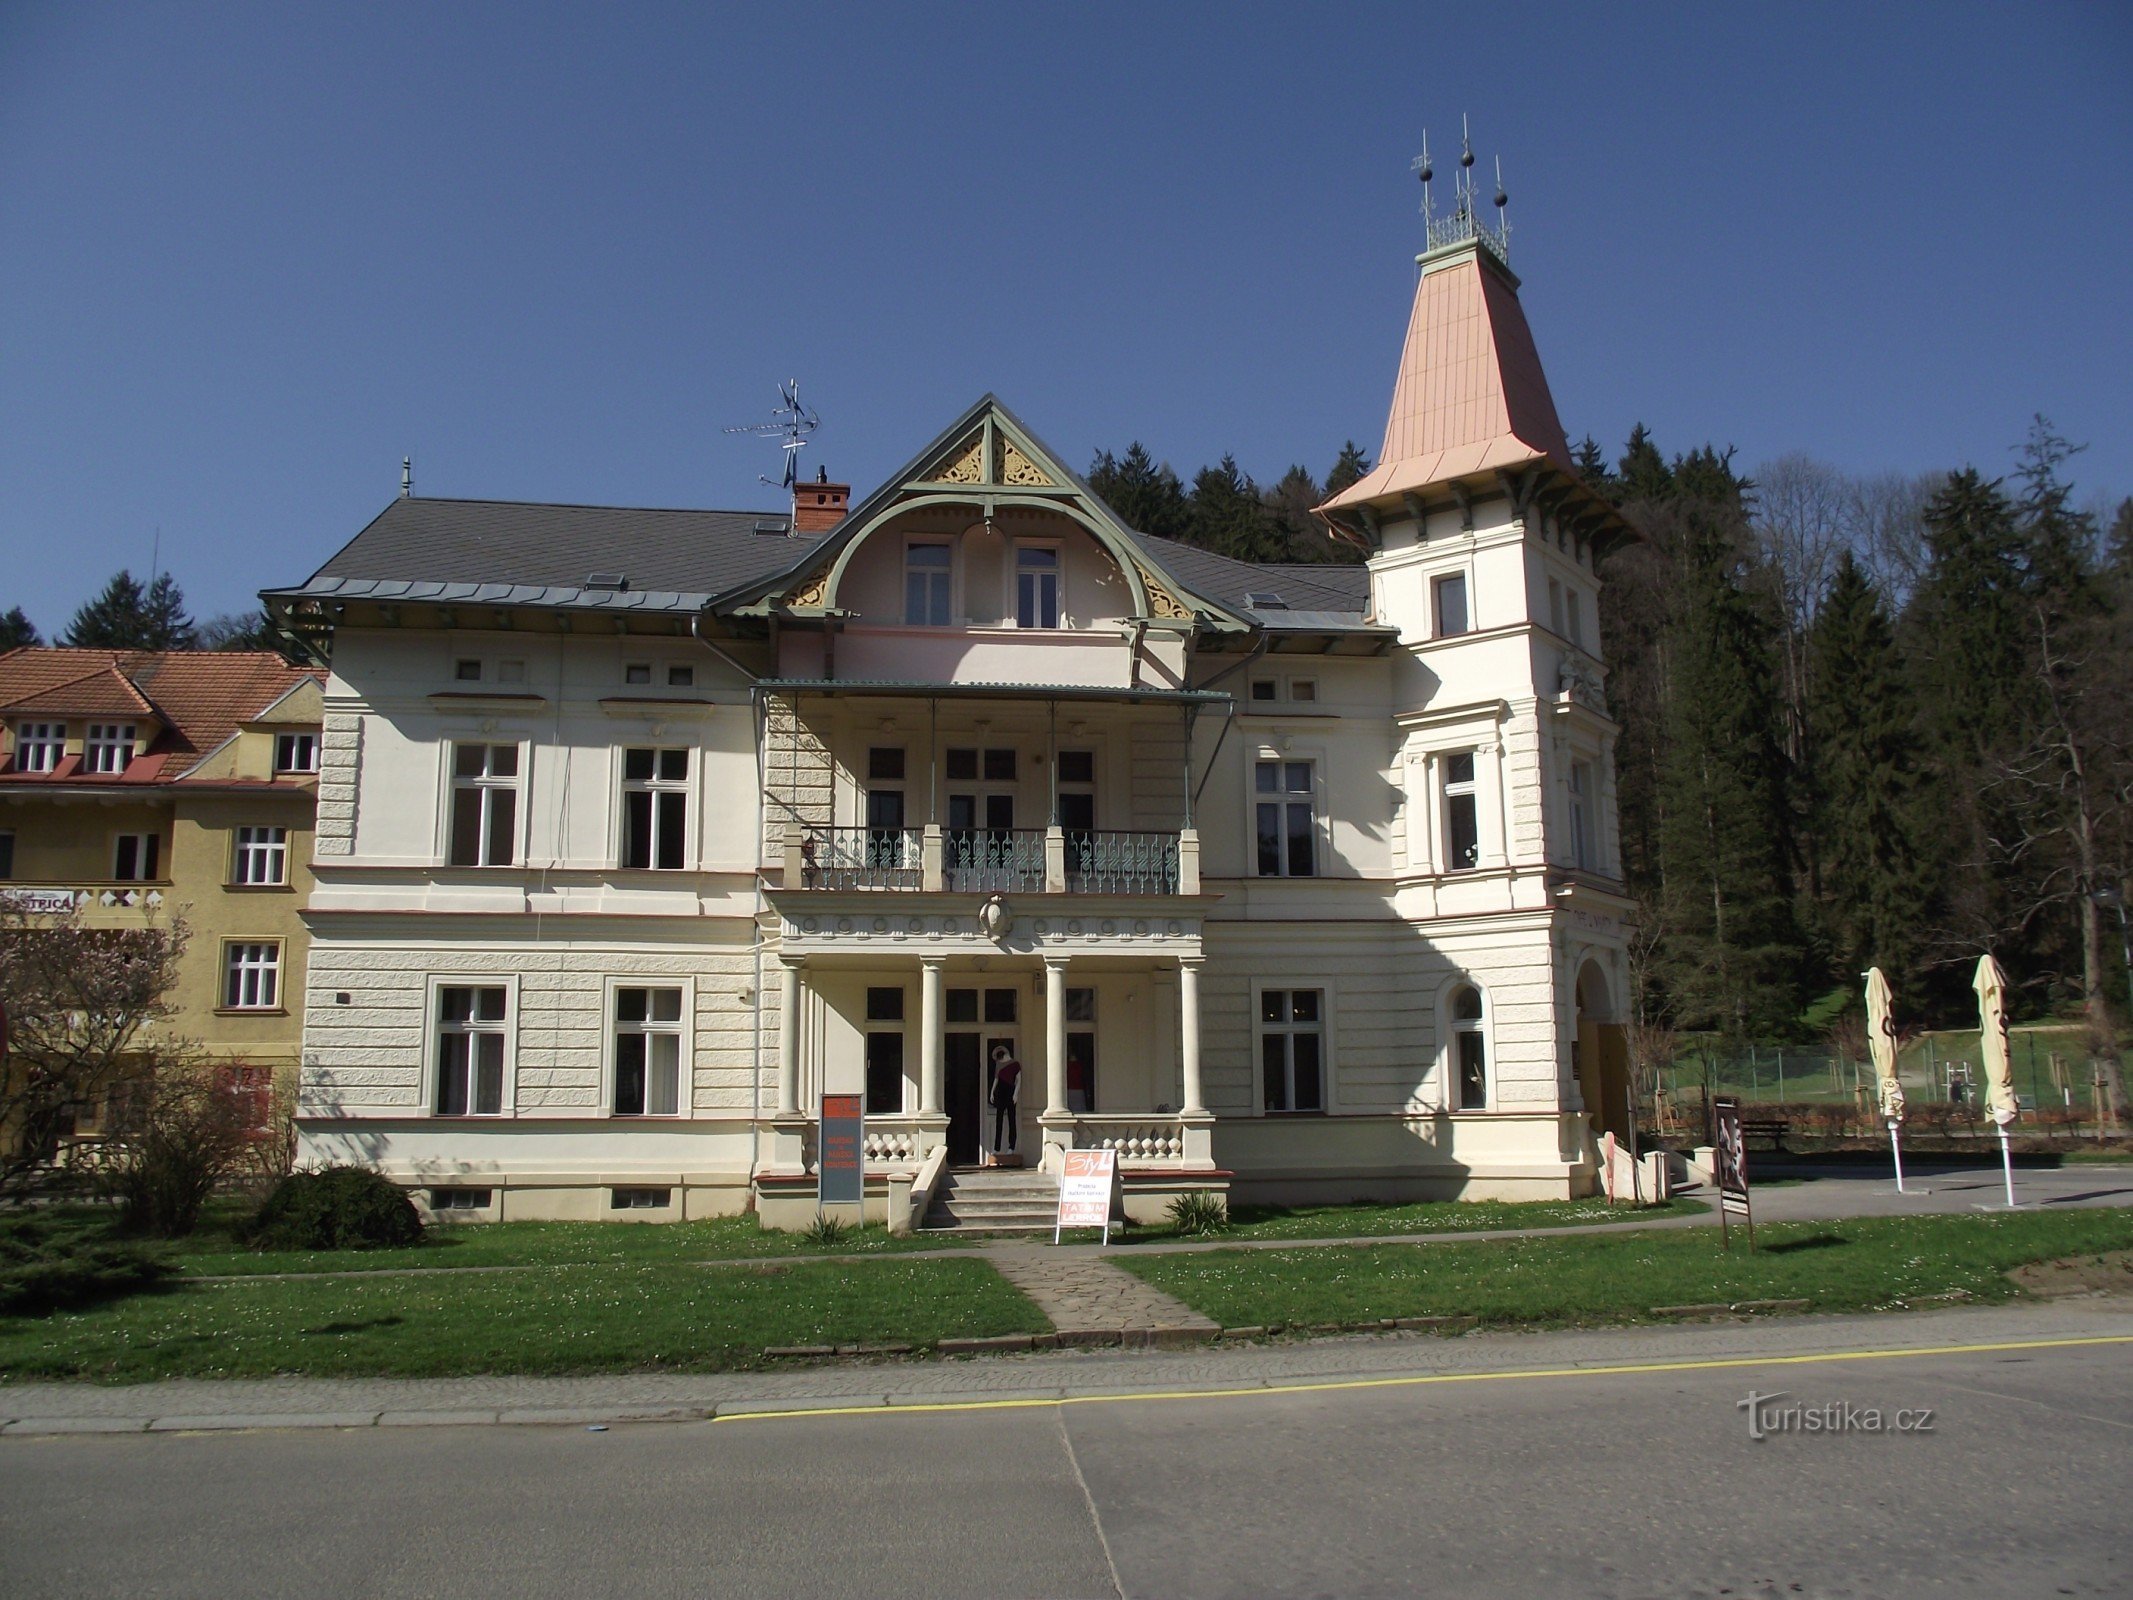 Luhačovice - Vila cu farmacie (Vila Austria, U Najády)